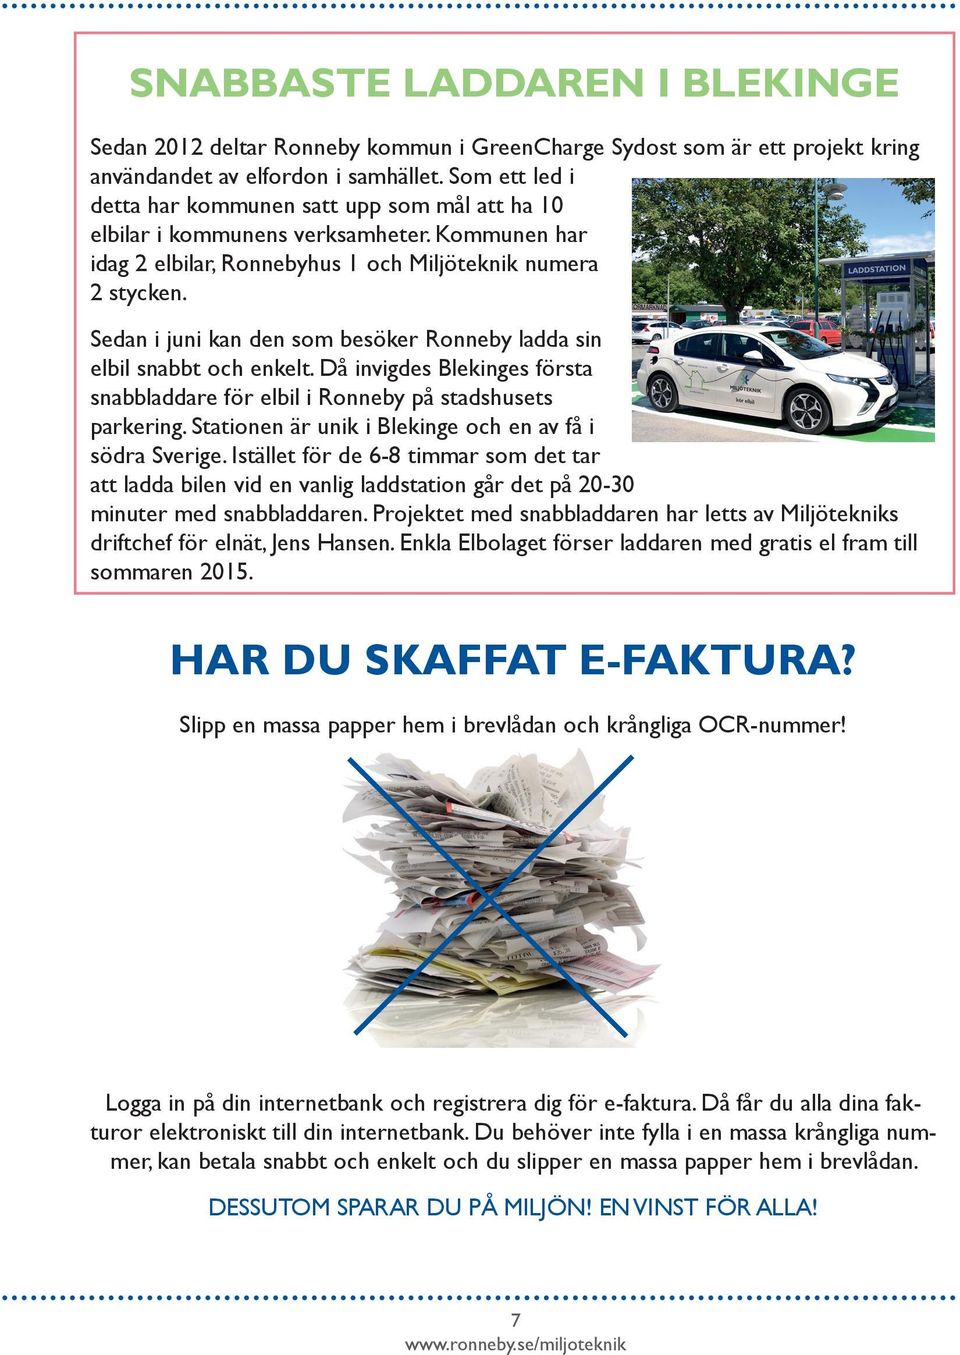 Sedan i juni kan den som besöker Ronneby ladda sin elbil snabbt och enkelt. Då invigdes Blekinges första snabbladdare för elbil i Ronneby på stadshusets parkering.